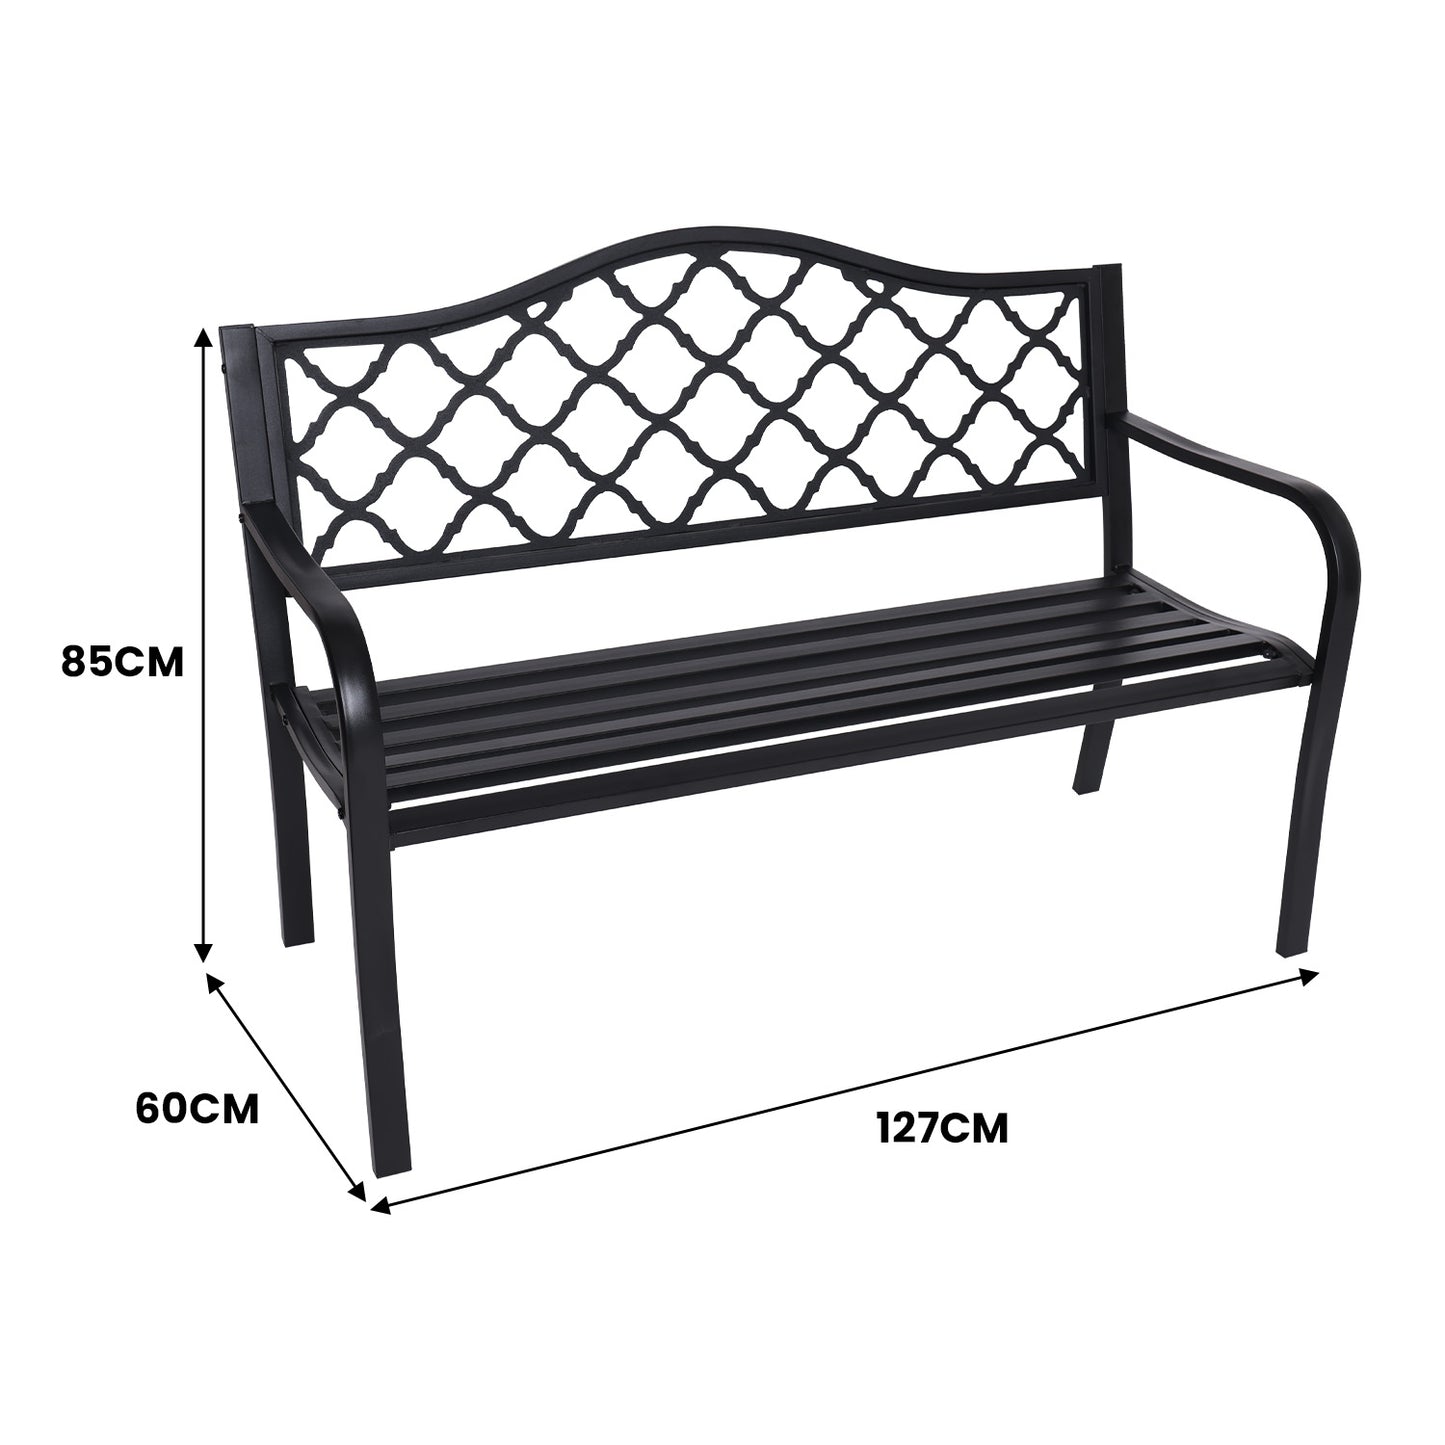 Outdoor Bench Seat Wallaroo Steel Metal Garden Black - Elegant